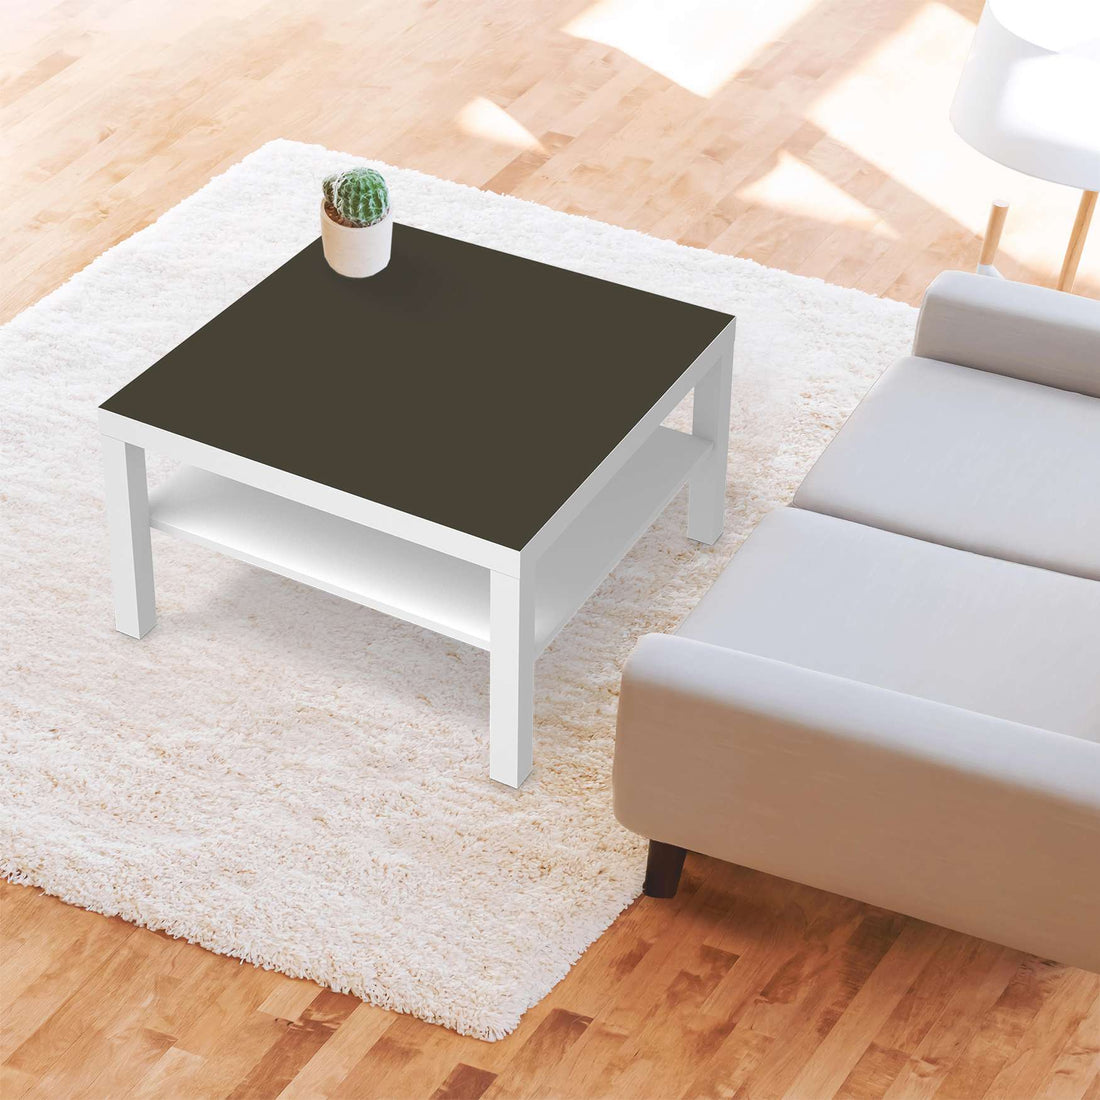 Selbstklebende Folie Braungrau Dark - IKEA Lack Tisch 78x78 cm - Wohnzimmer